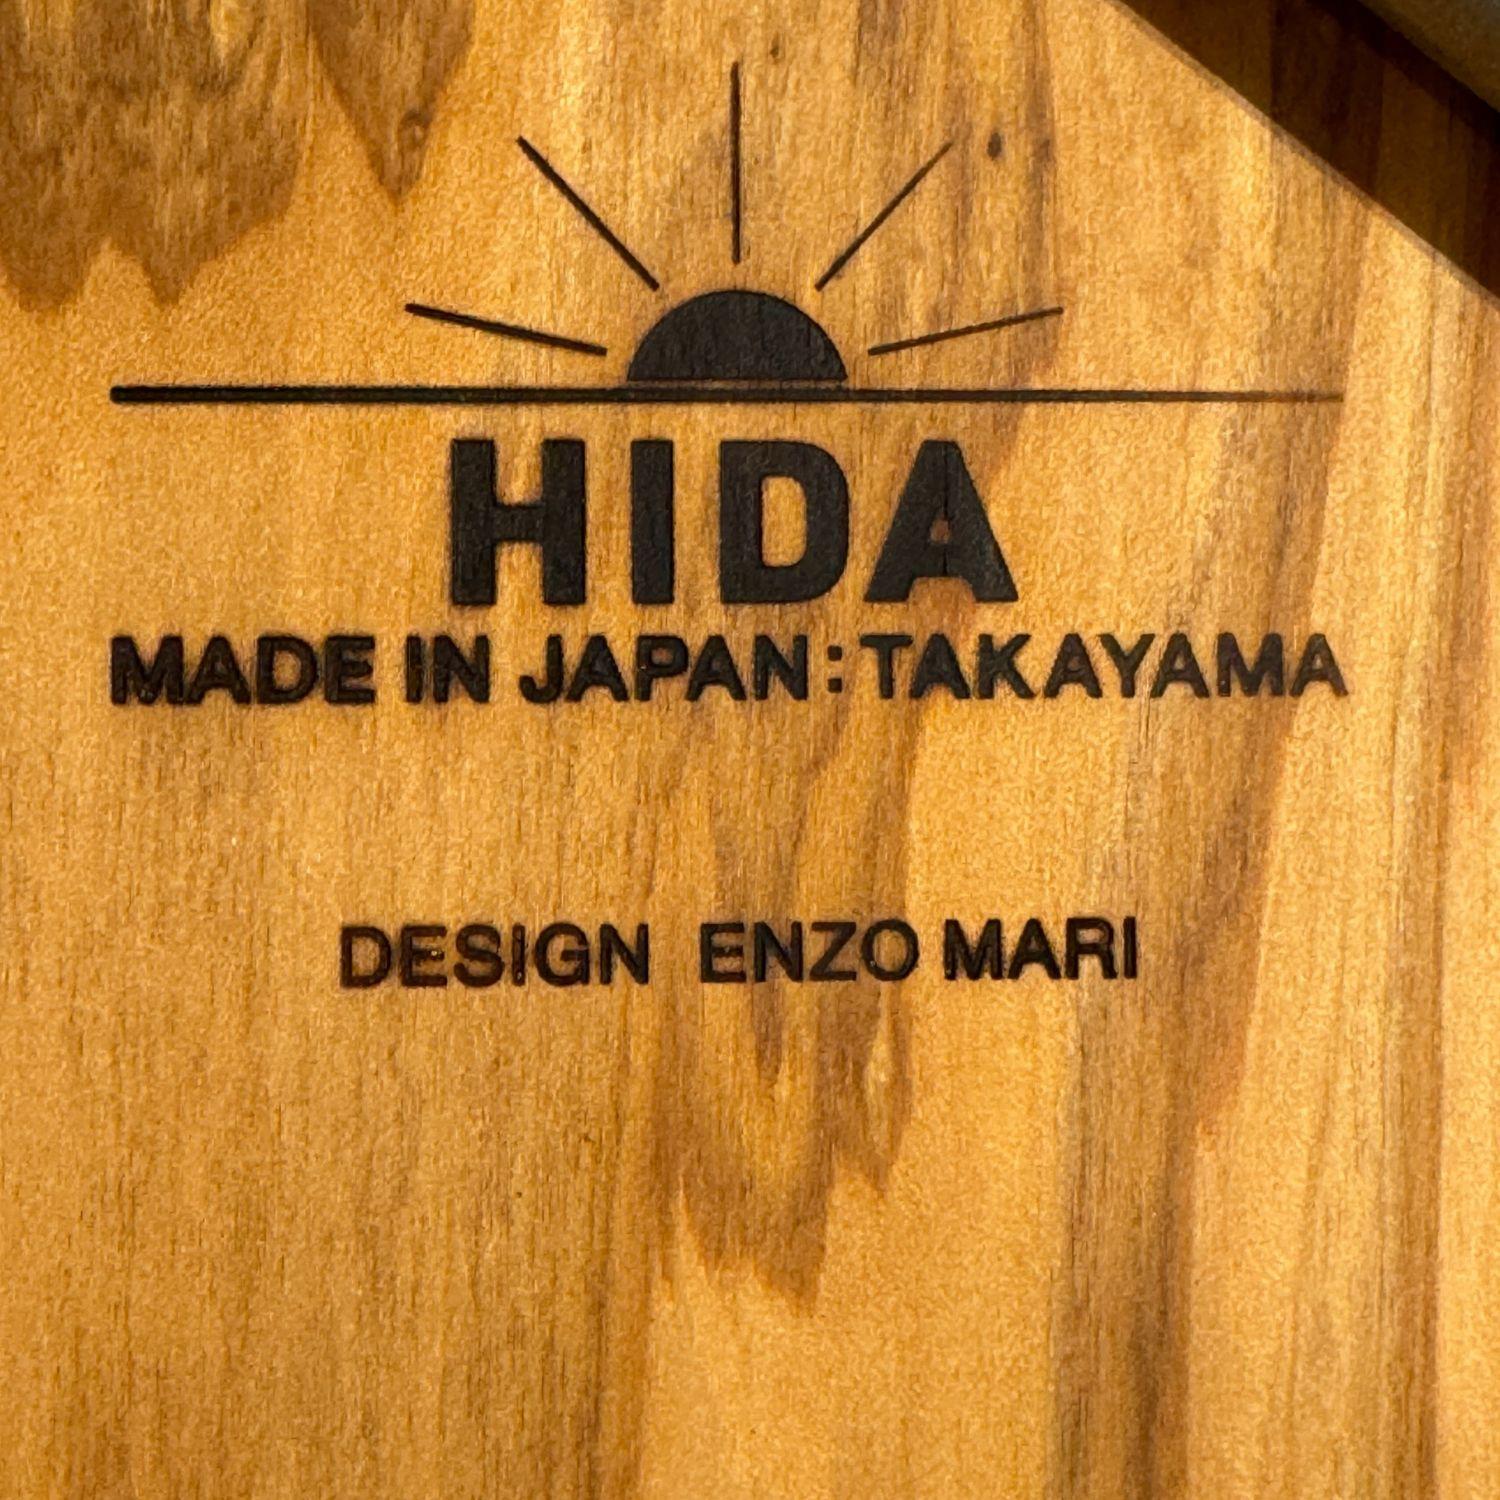 Enzo Mari 'Vertana' Spiegel aus natürlicher japanischer Zeder für Hida im Angebot 4